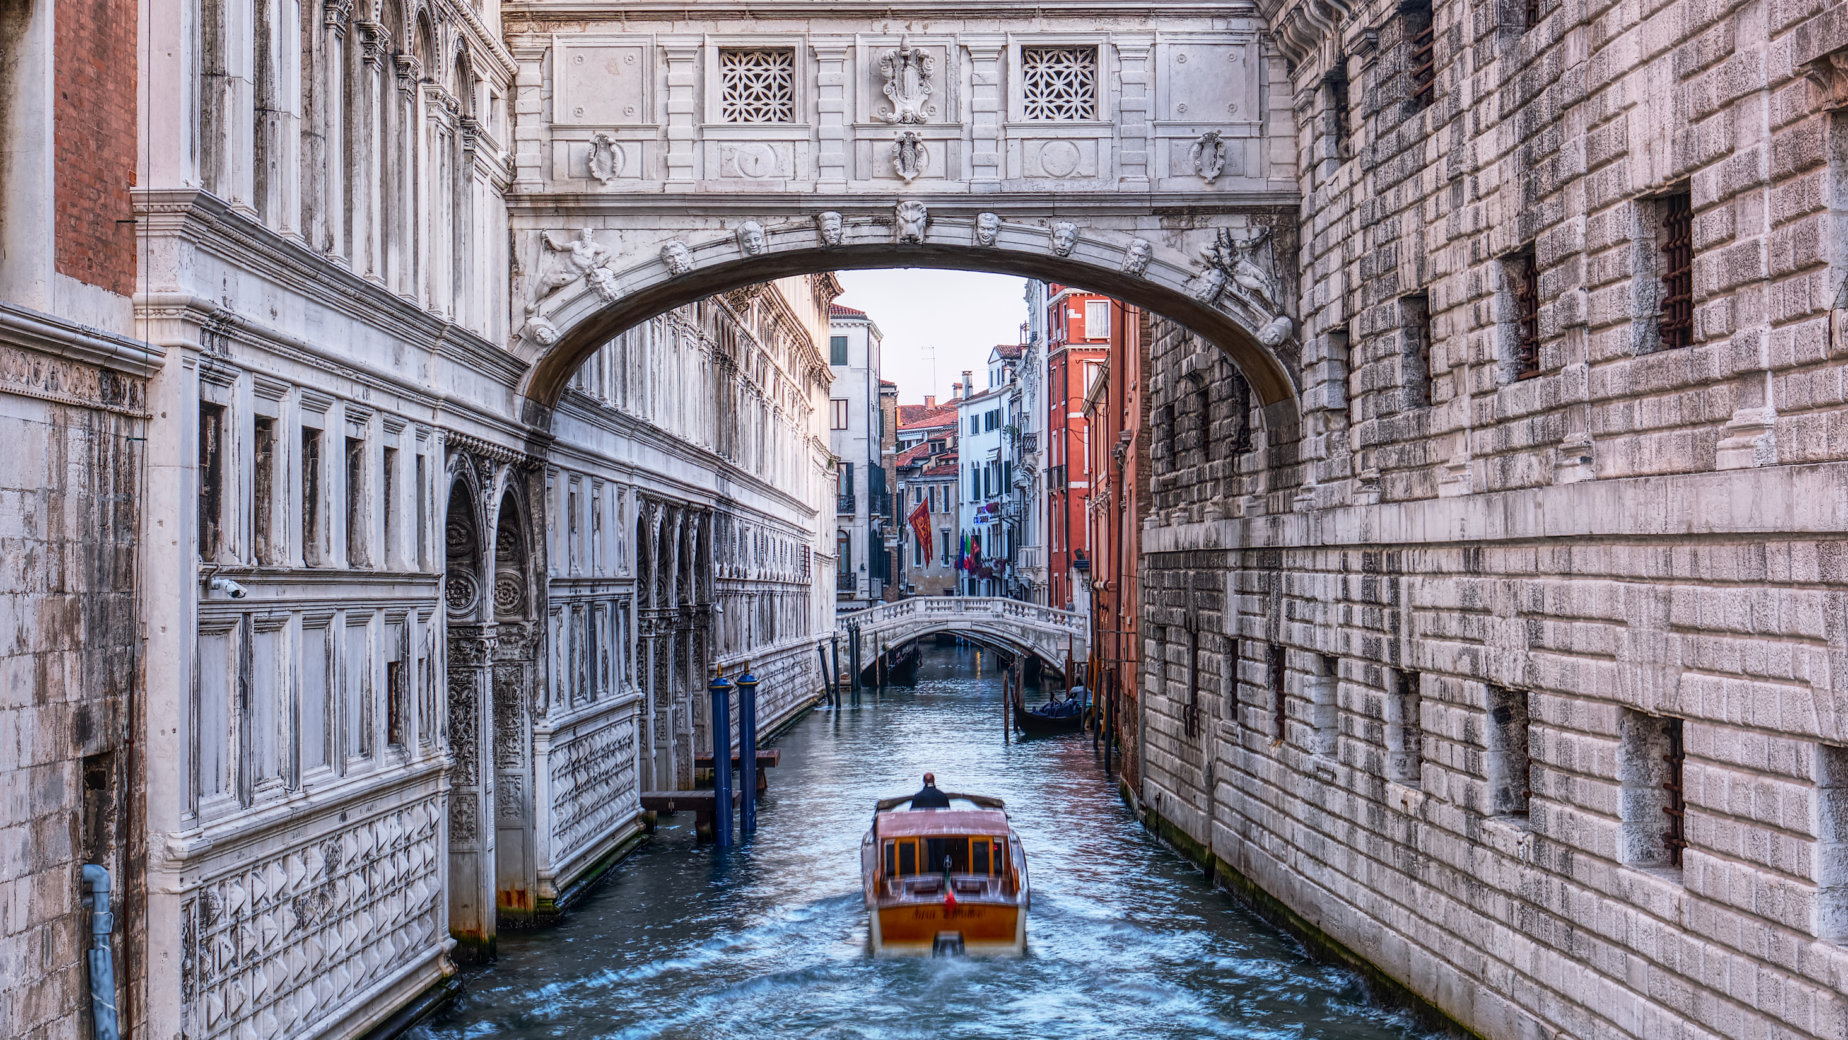 Venice Canal by Pierre Laviolette